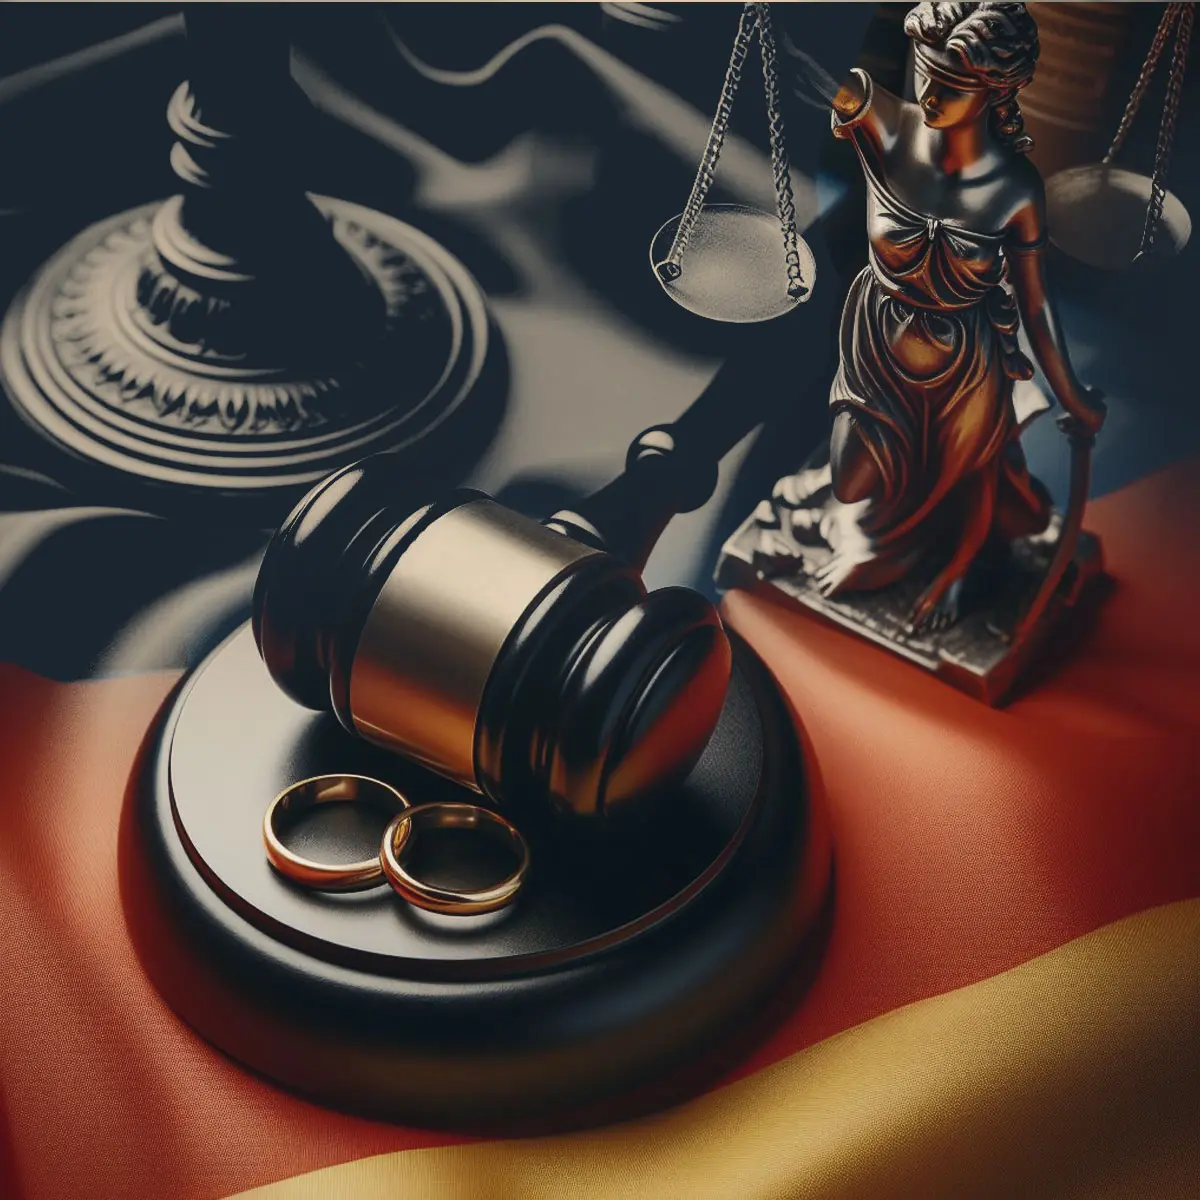 پیامدهای نقض قوانین ازدواج در آلمان چیست؟